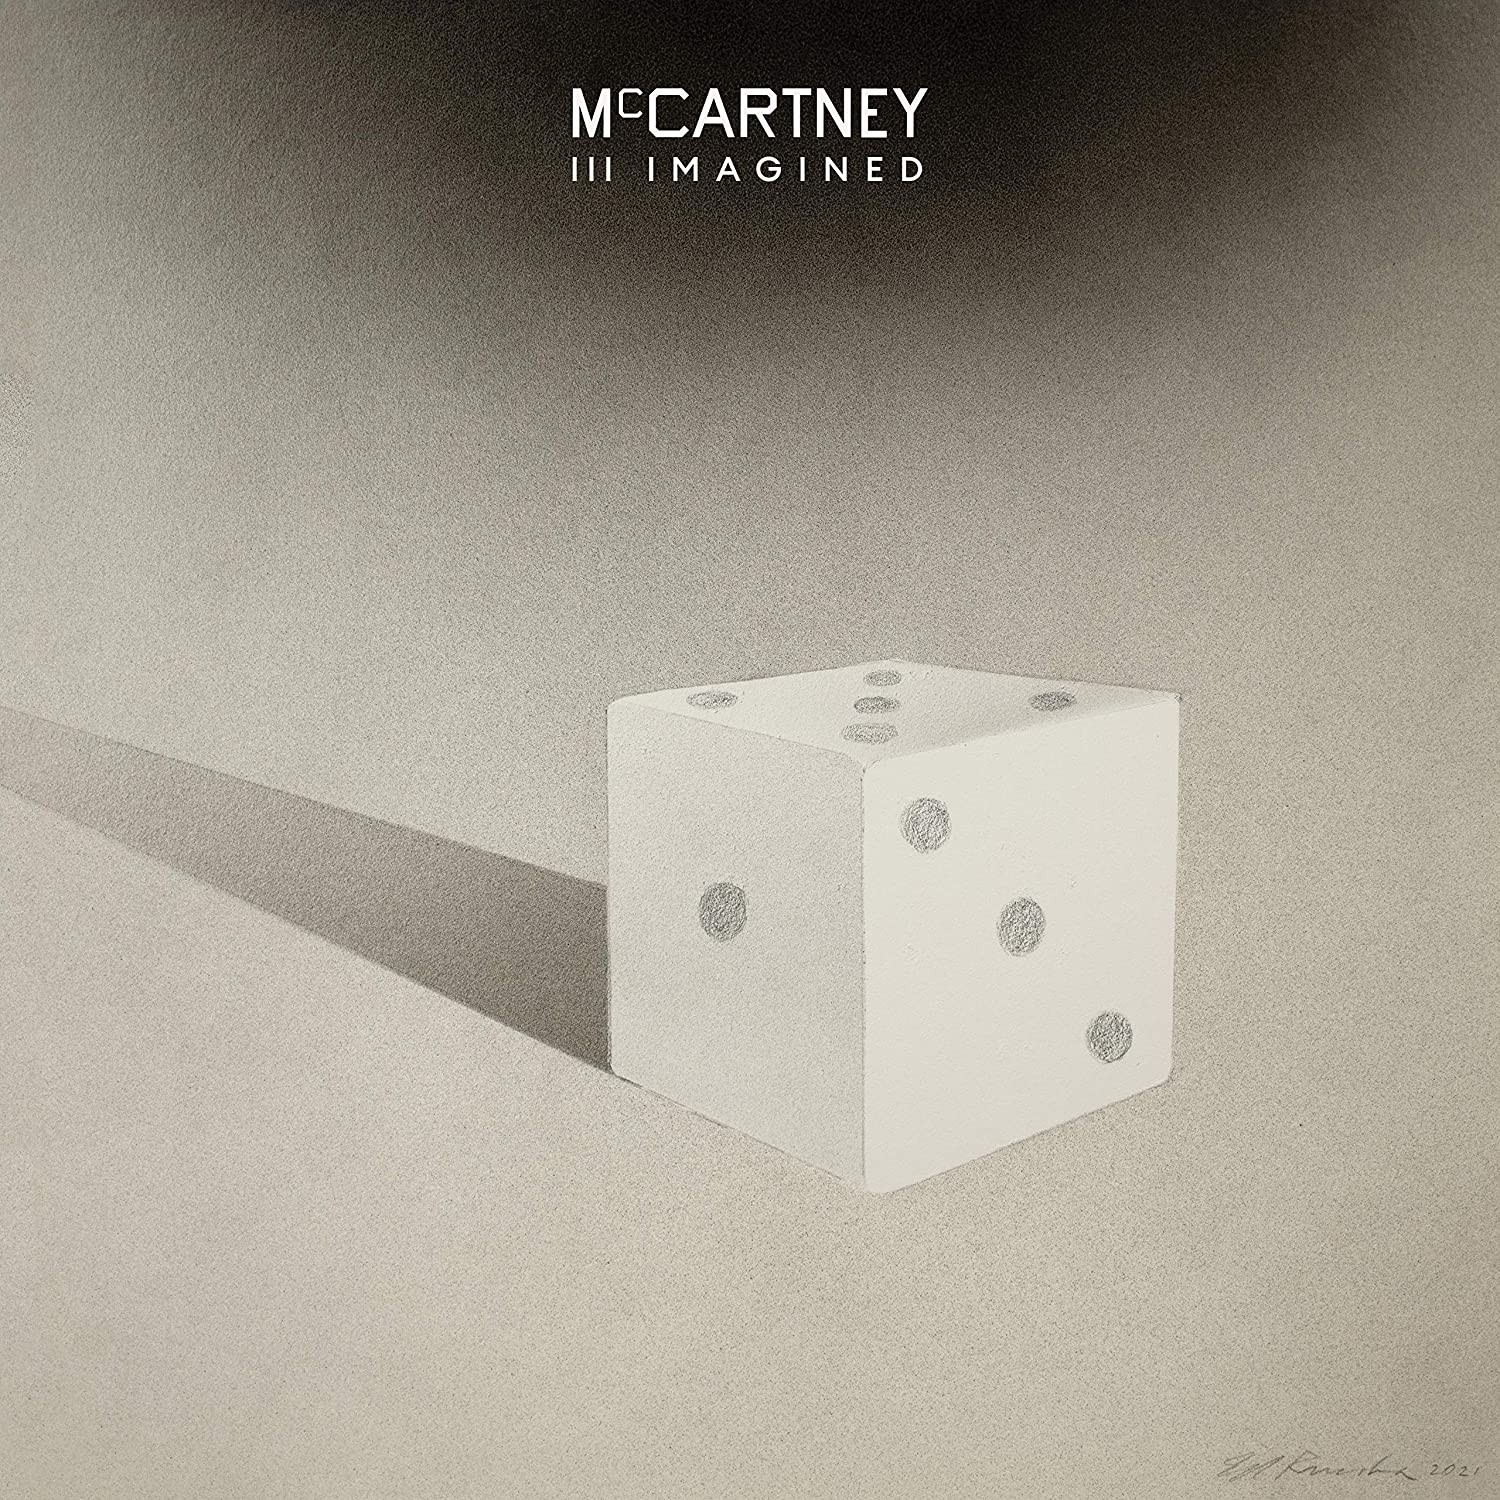 Paul McCartney - Mccartney III Imagined (Black) 2XLP